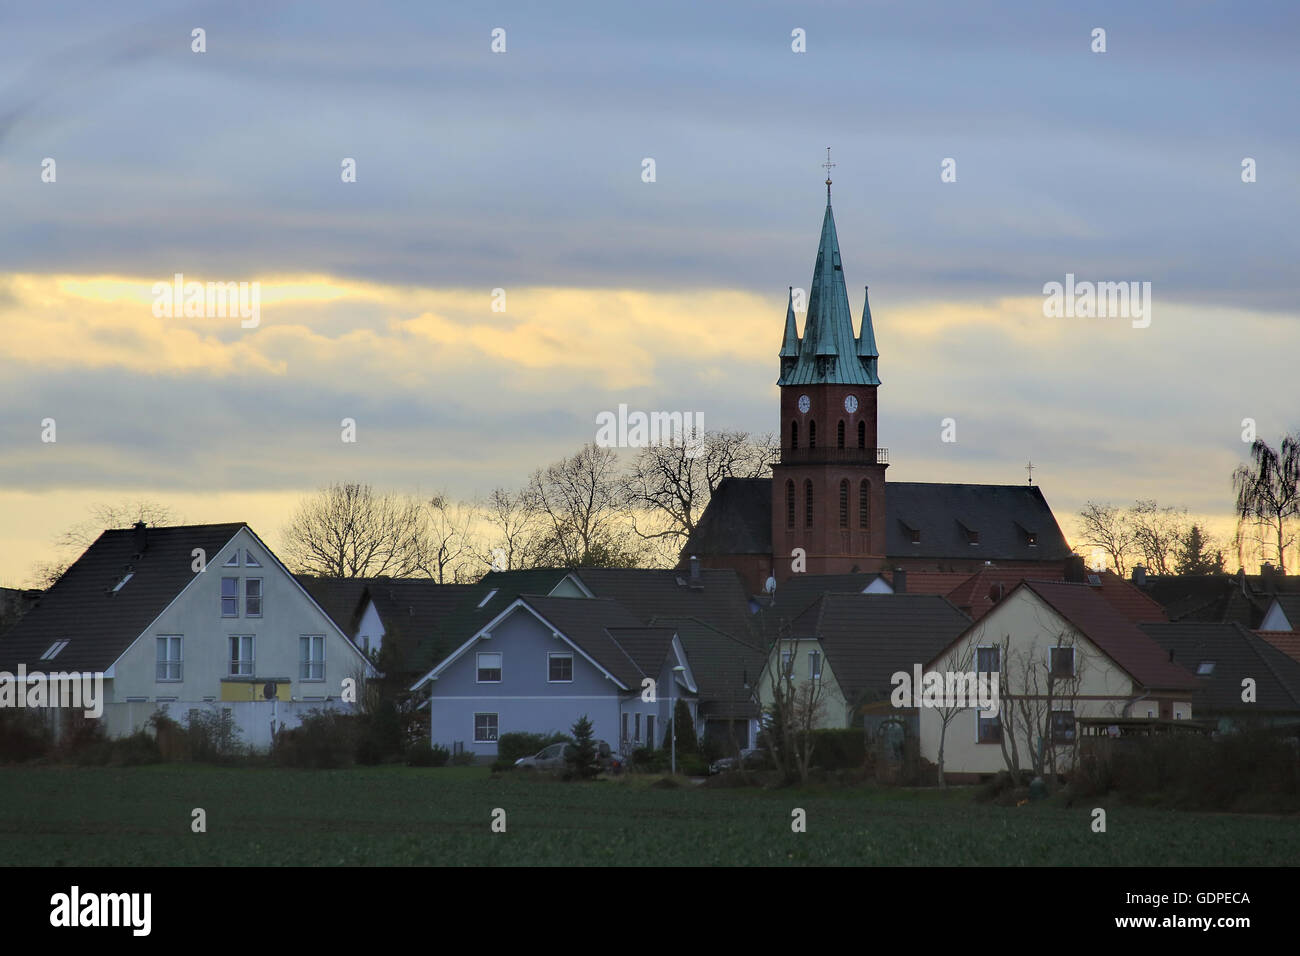 Eindrucksvolle Wolkengebilde über Magdeburg Ottersleben, Sachsen-Anhalt, Deutschland, durch ein HDR imaging Technik sichtbar gemacht. Stockfoto